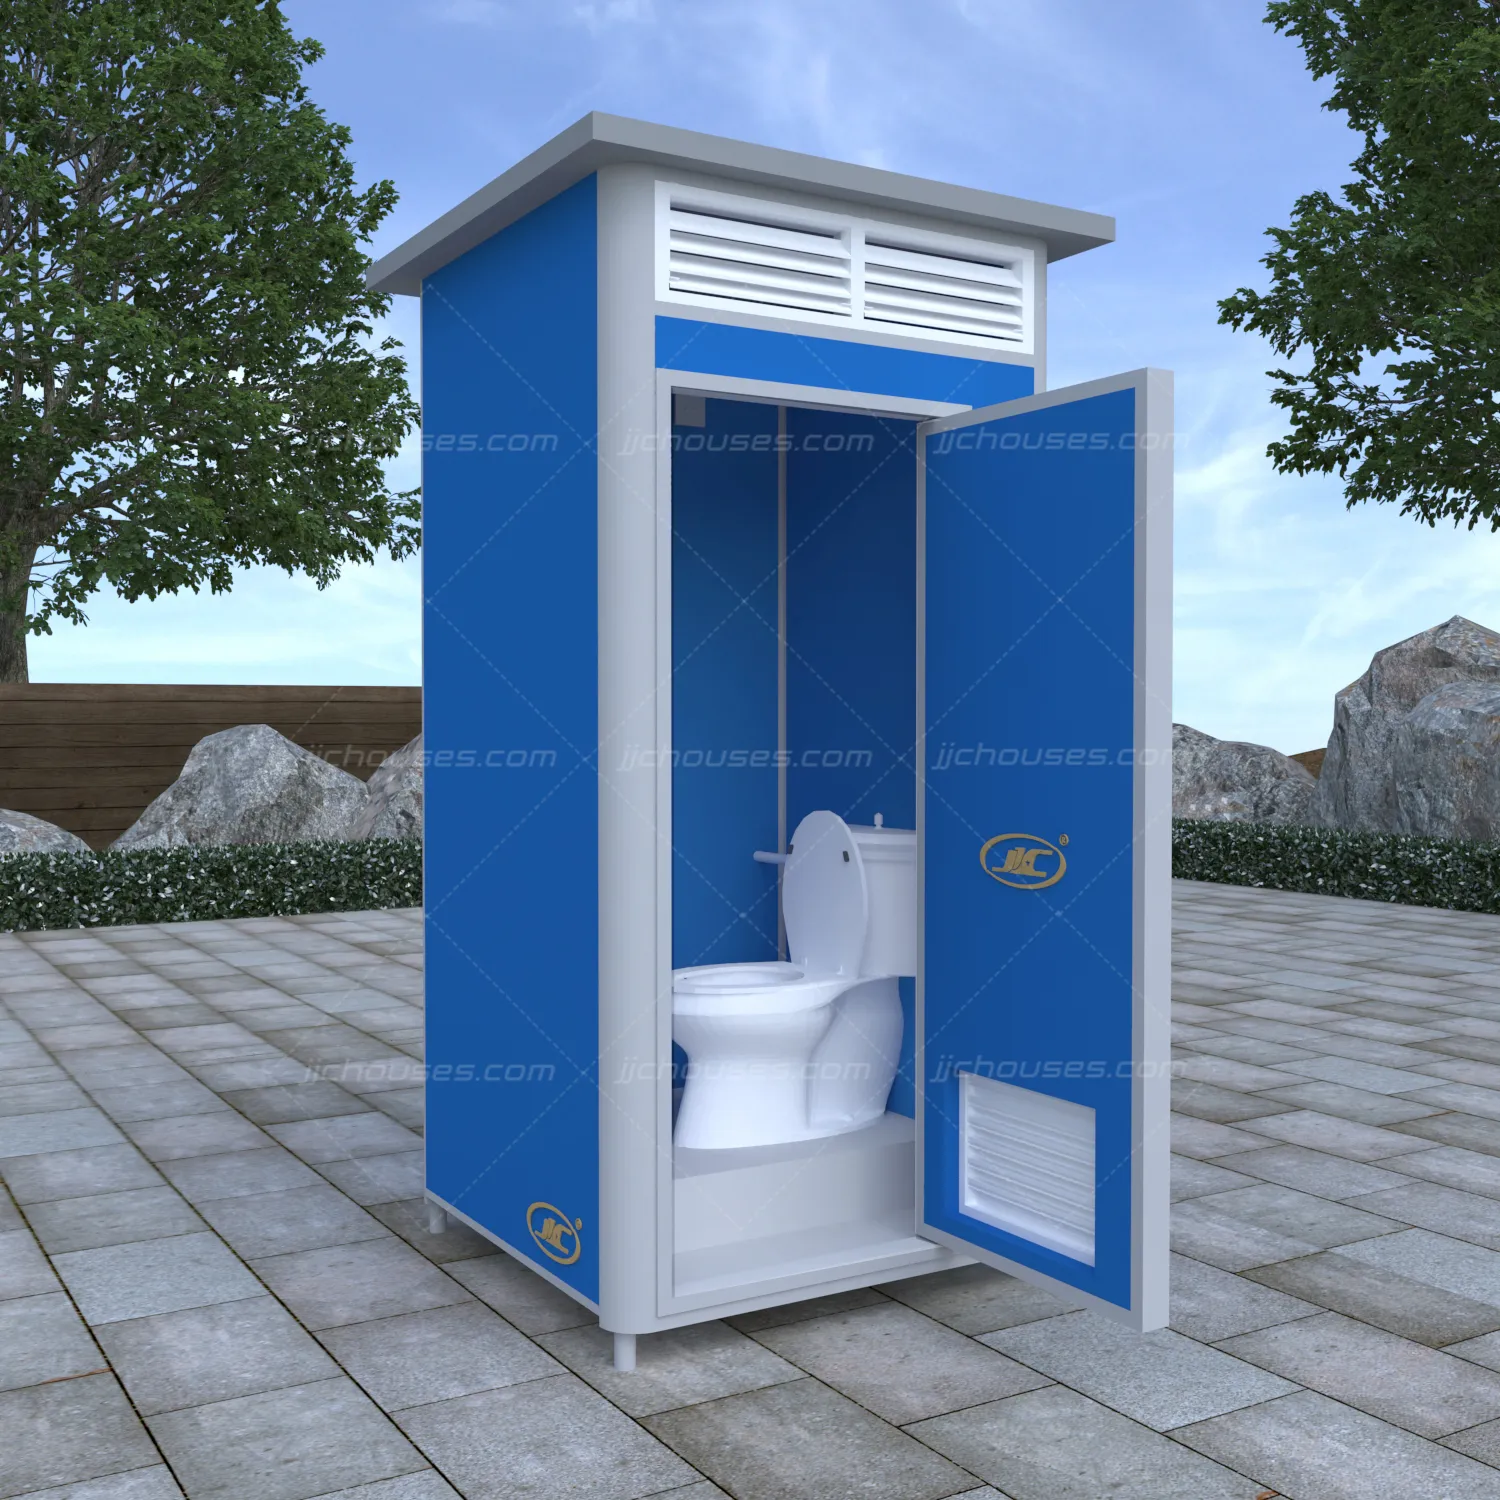 Per la costruzione mobile pieghevole senza risciacquo eco chimico blu portatile wc e doccia prefabbricato wc